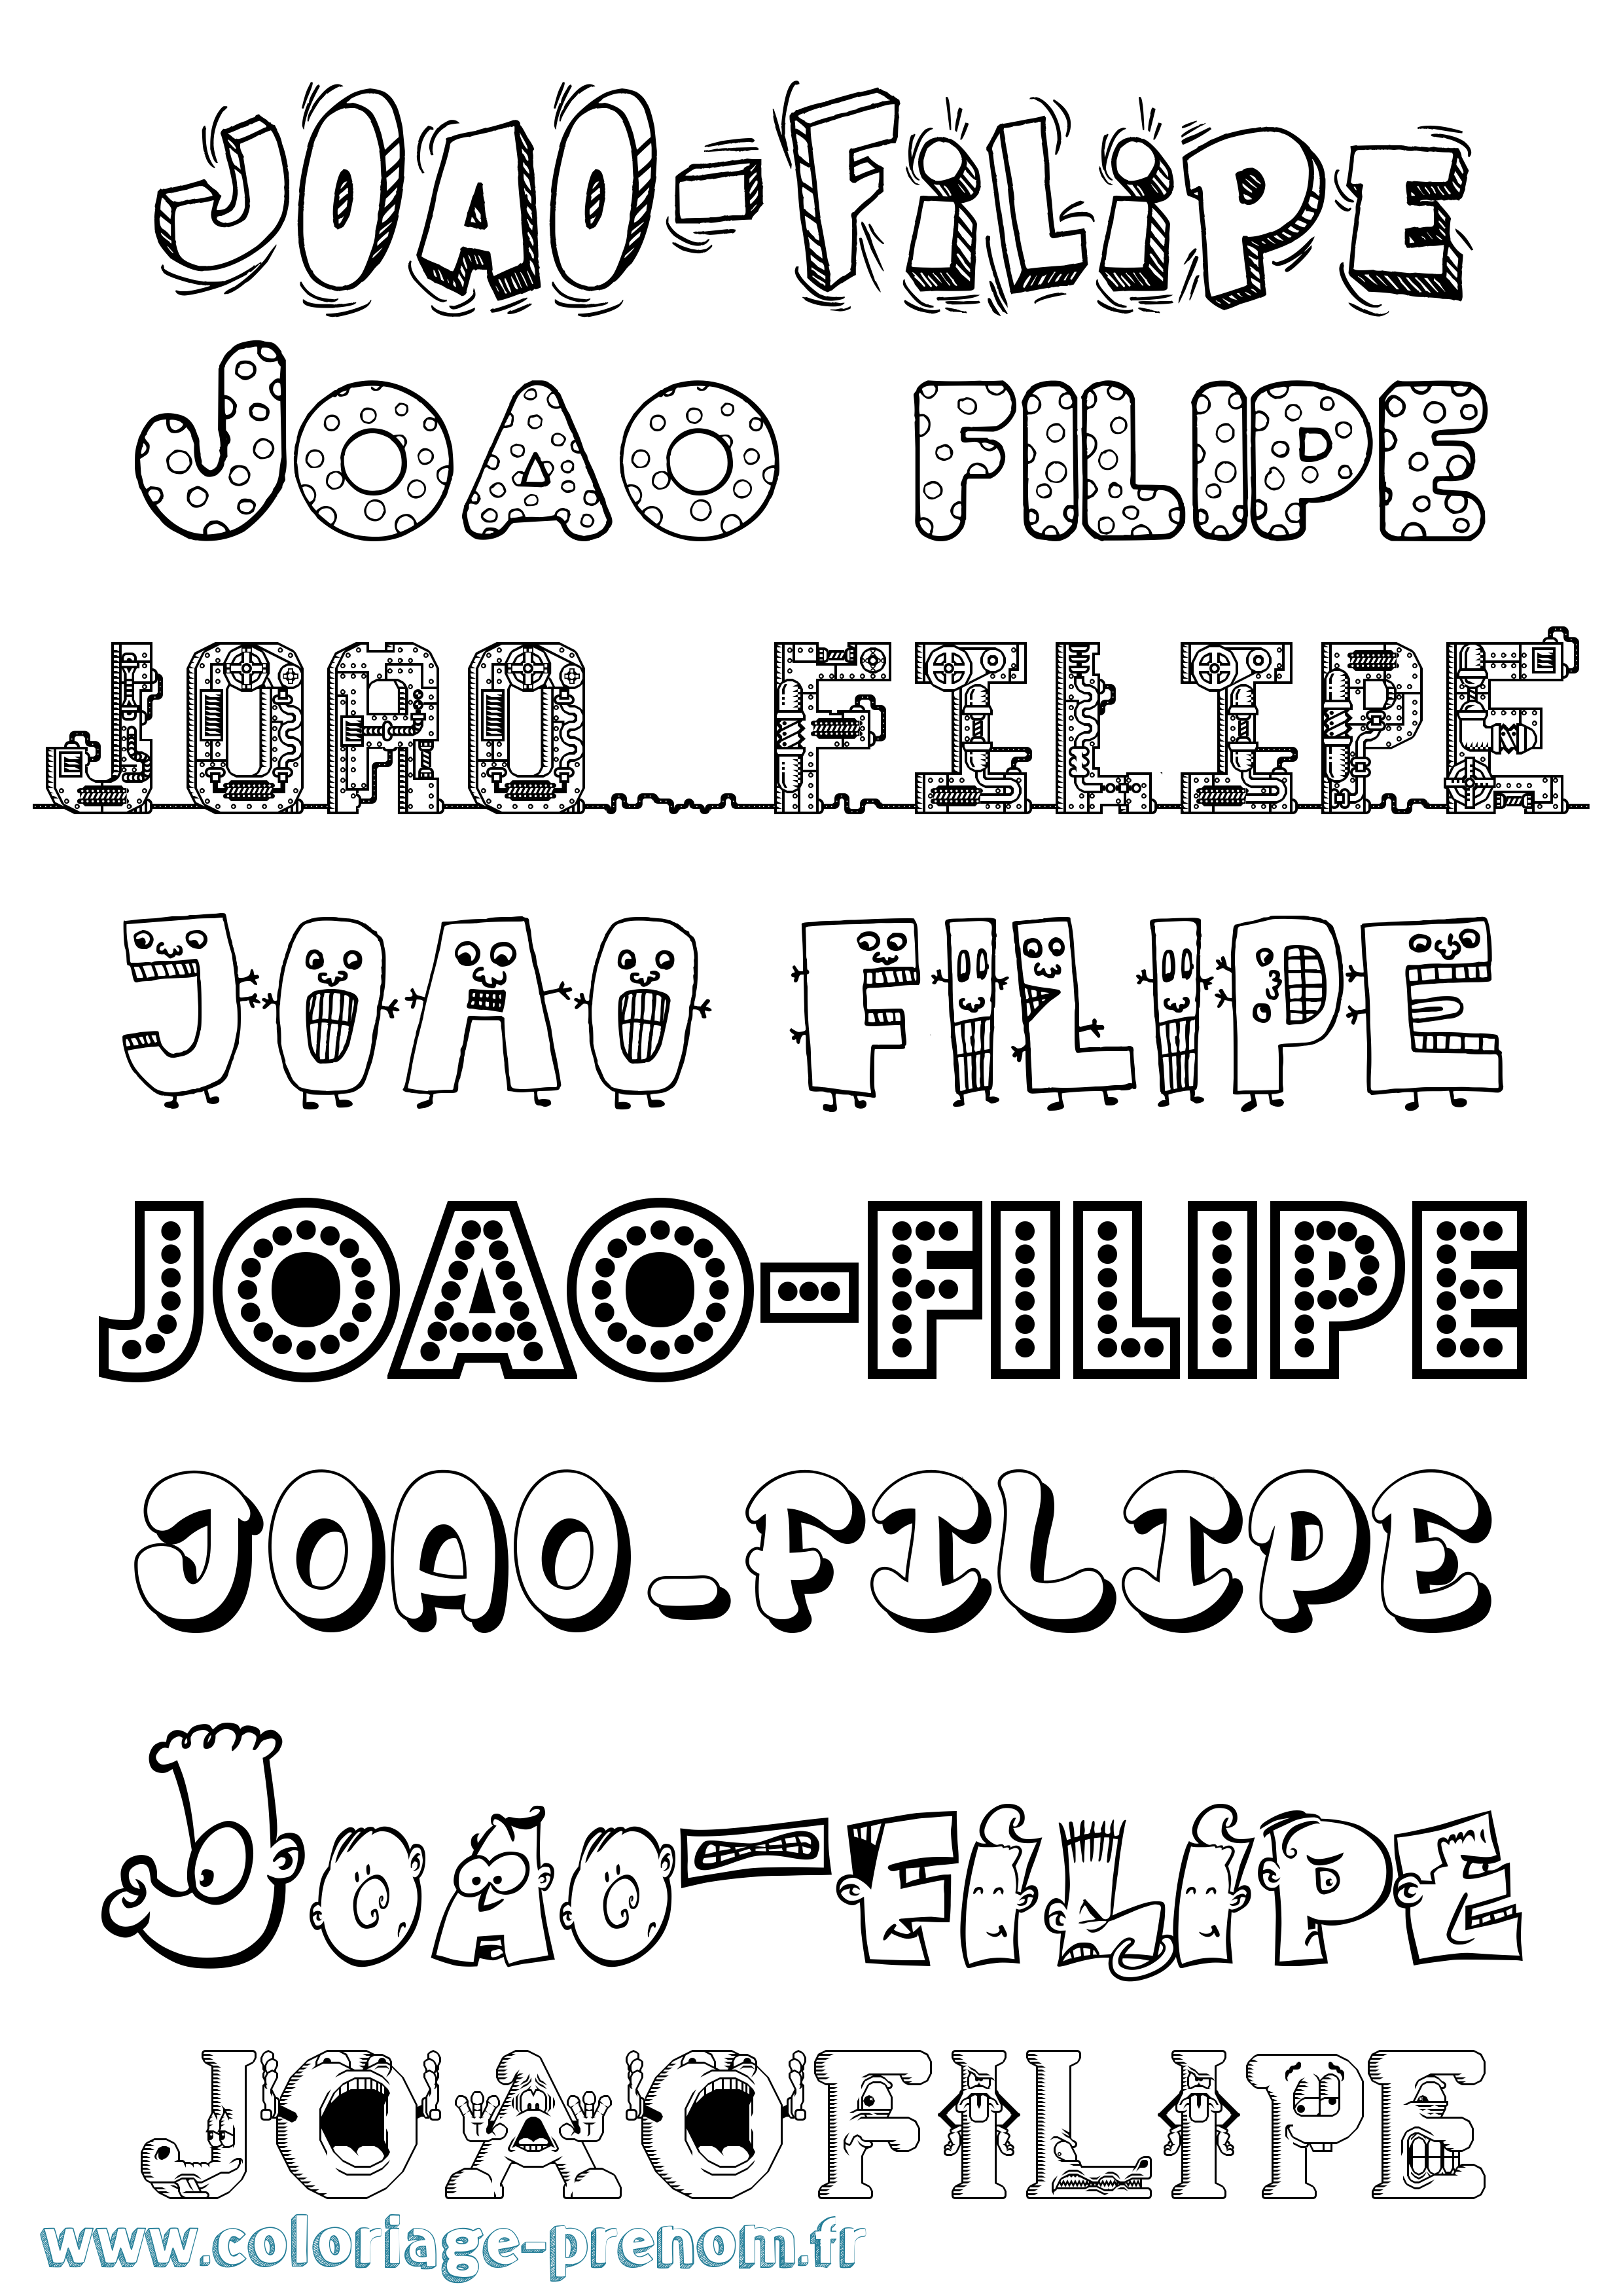 Coloriage prénom Joao-Filipe Fun